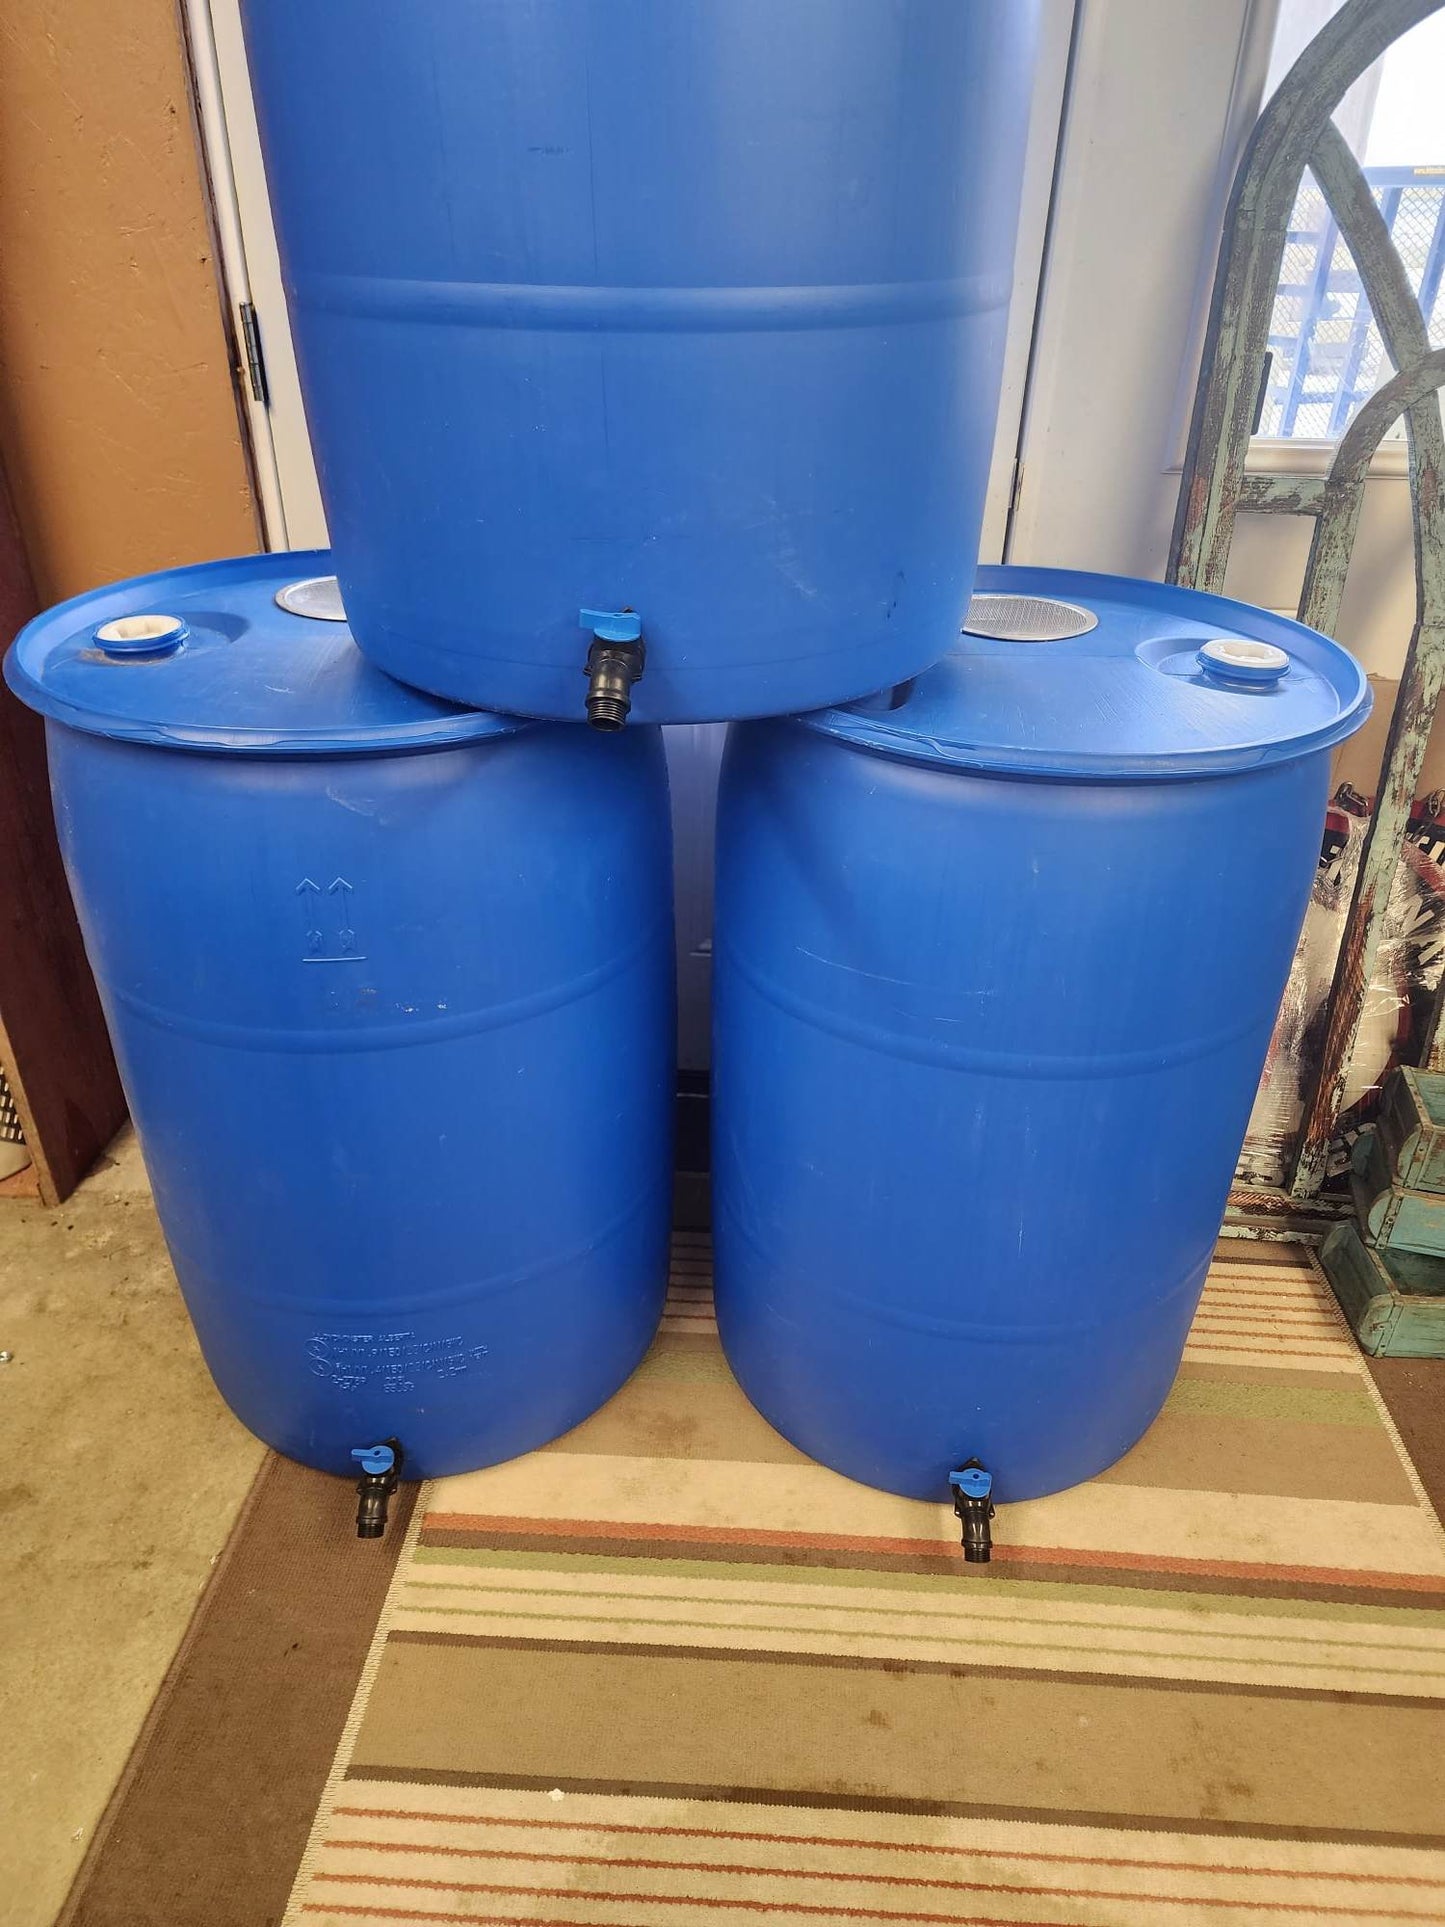 55 Gallon Rain Collection Barrel w Screen & Spicot